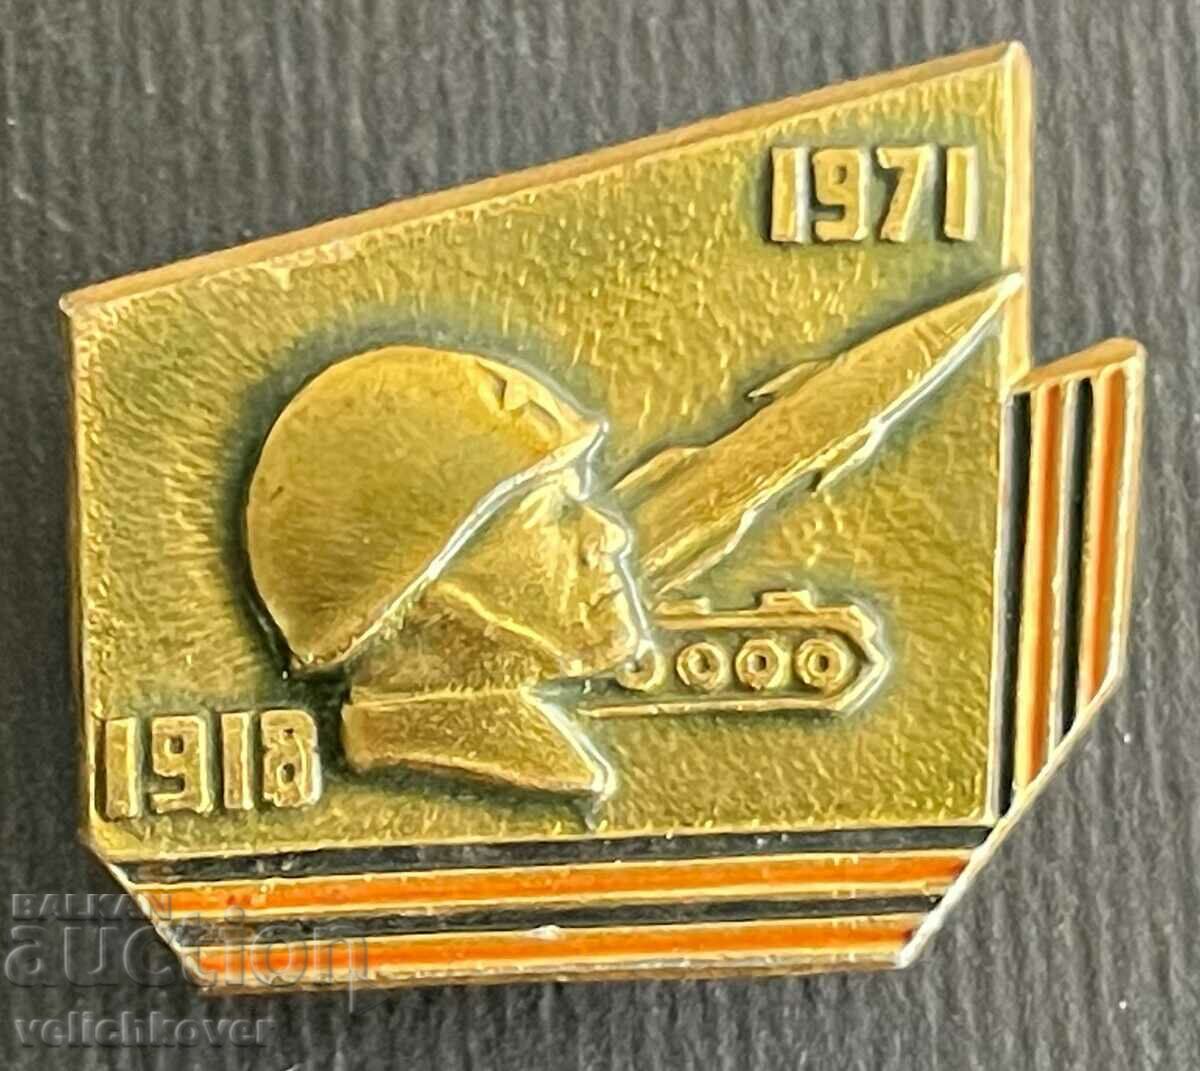 34714 СССР знак 63г. Съветска армия 1918-1971г.